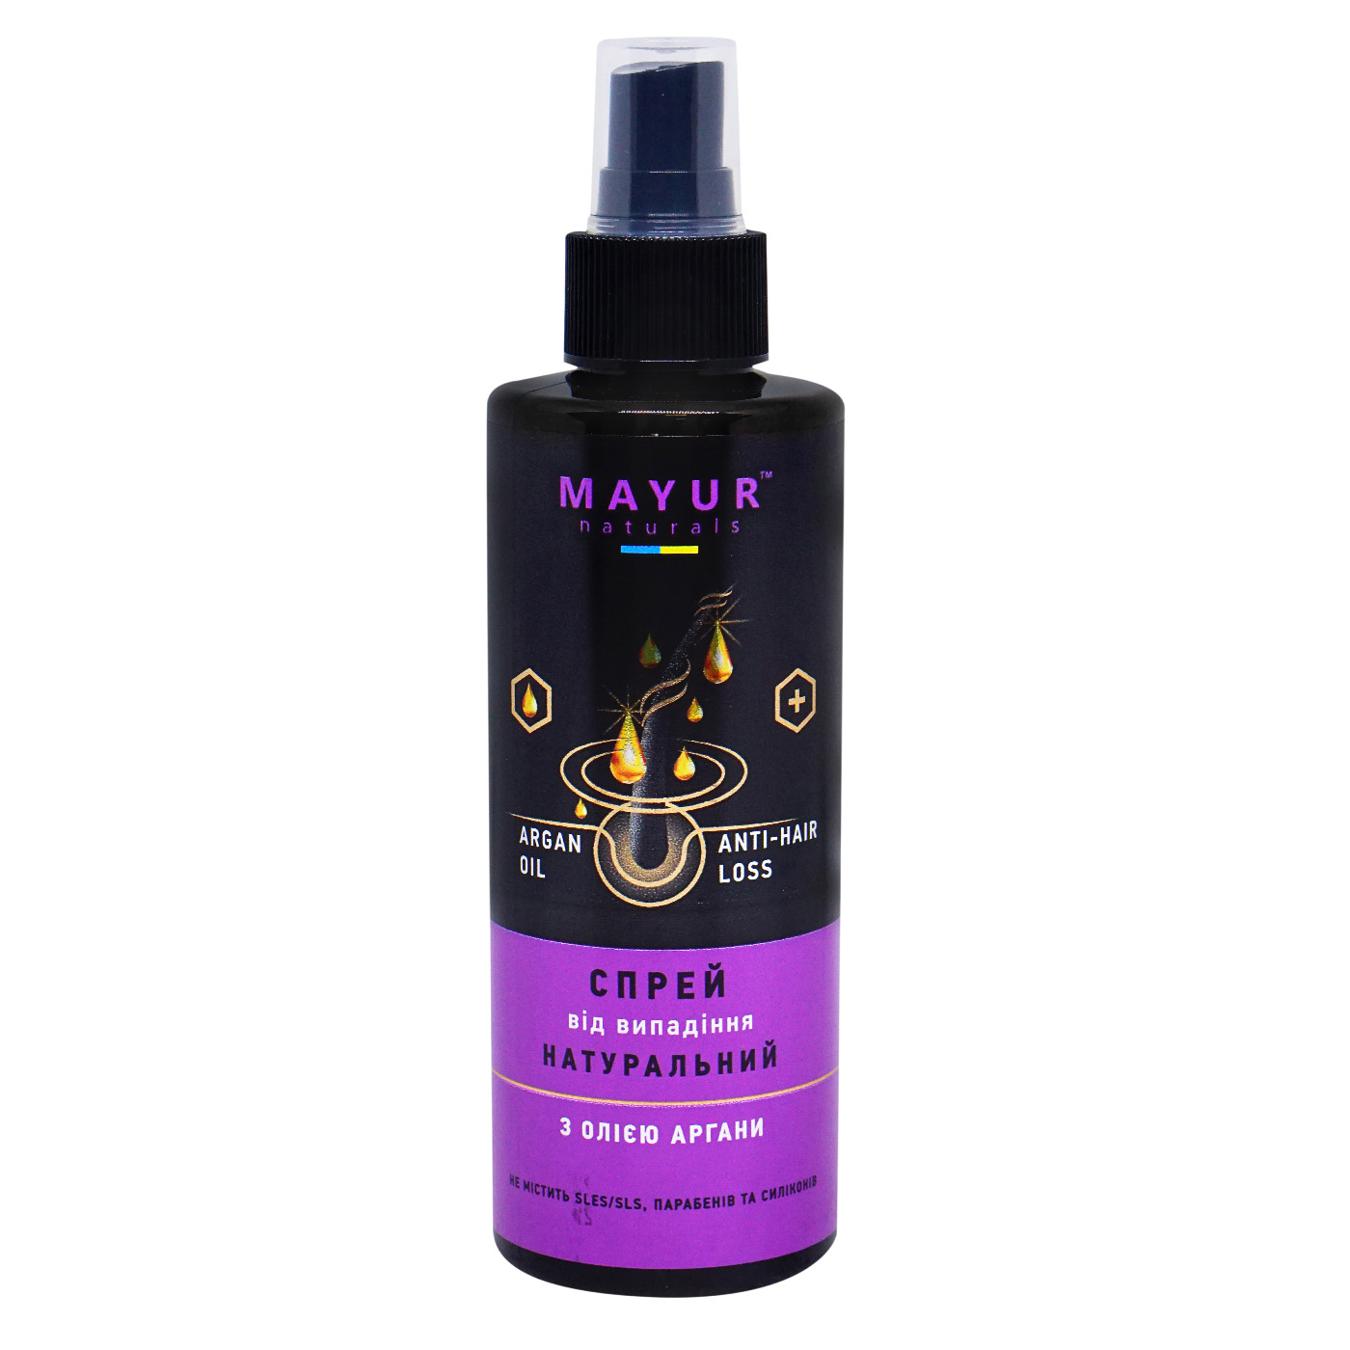 Mayur natural hair loss spray with argan 200 ml